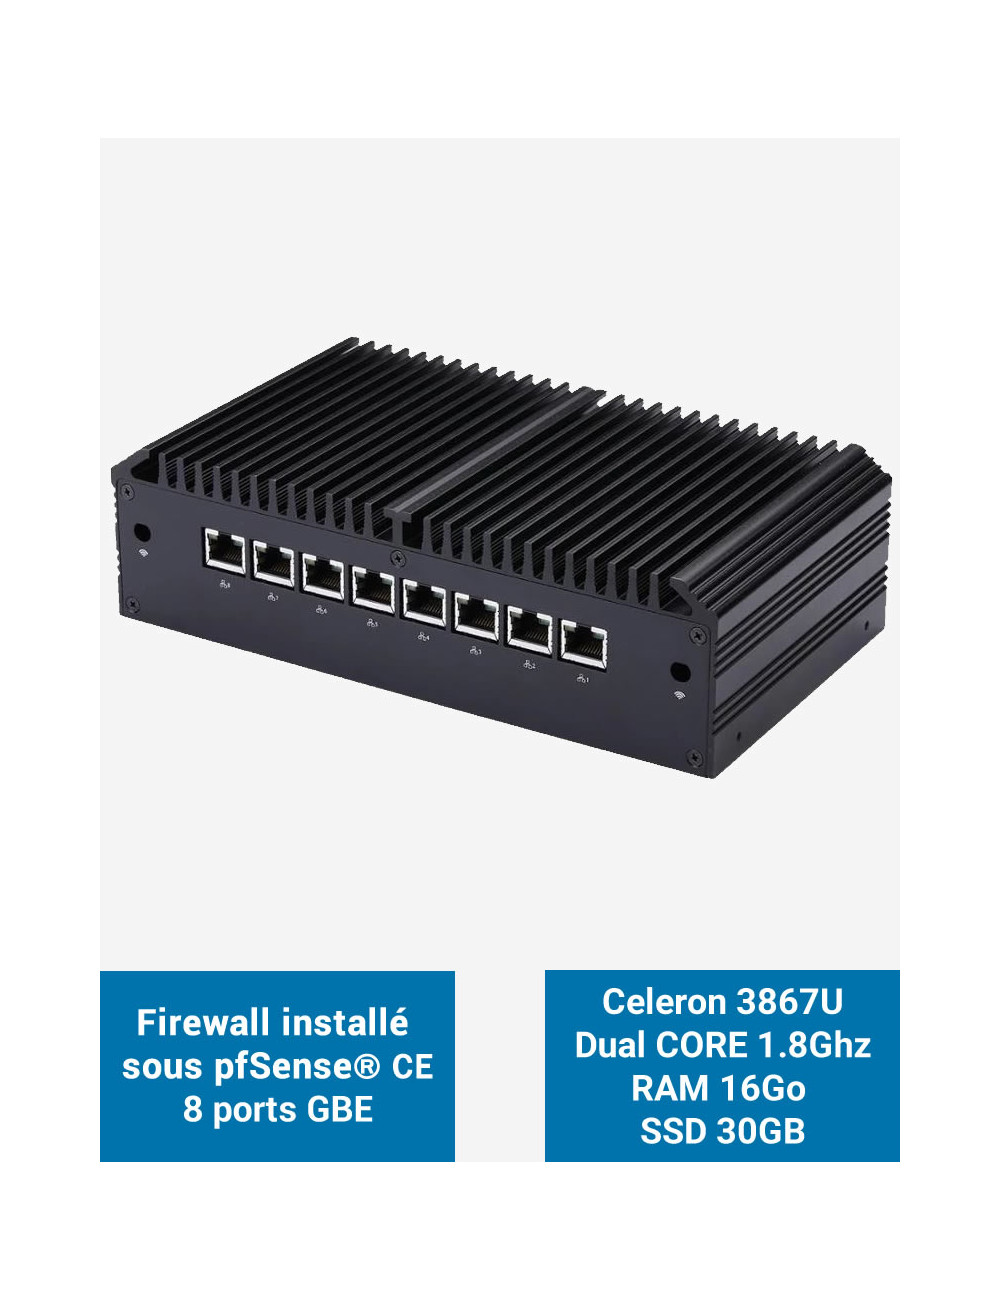 Firewall Q8x Celeron 3867U 8 ports GbE 16GB 30GB